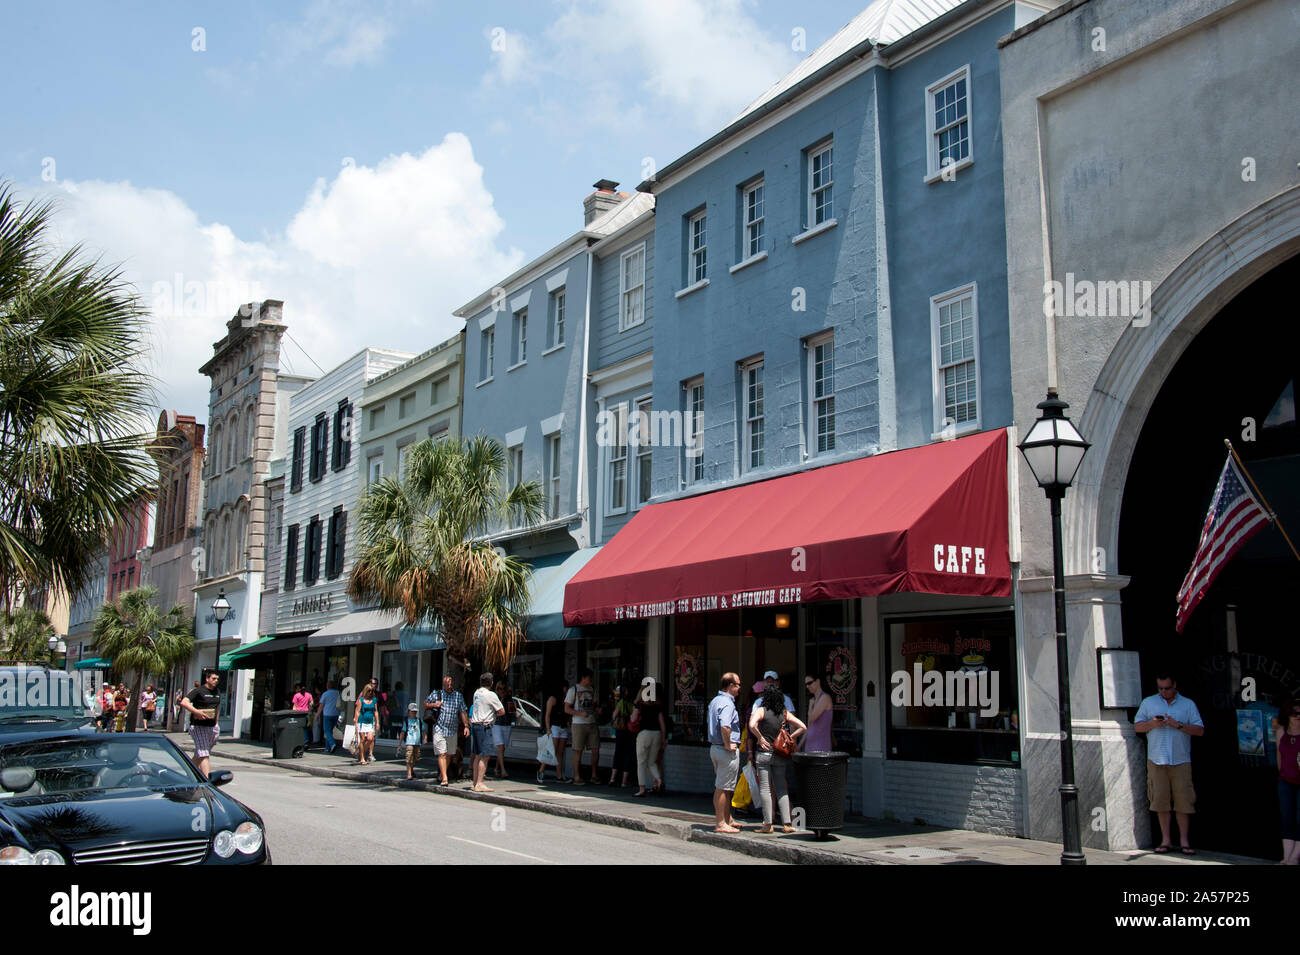 Los edificios a lo largo de la calle principal de compras, la calle King, Charleston, Carolina del Sur, EE.UU. Foto de stock